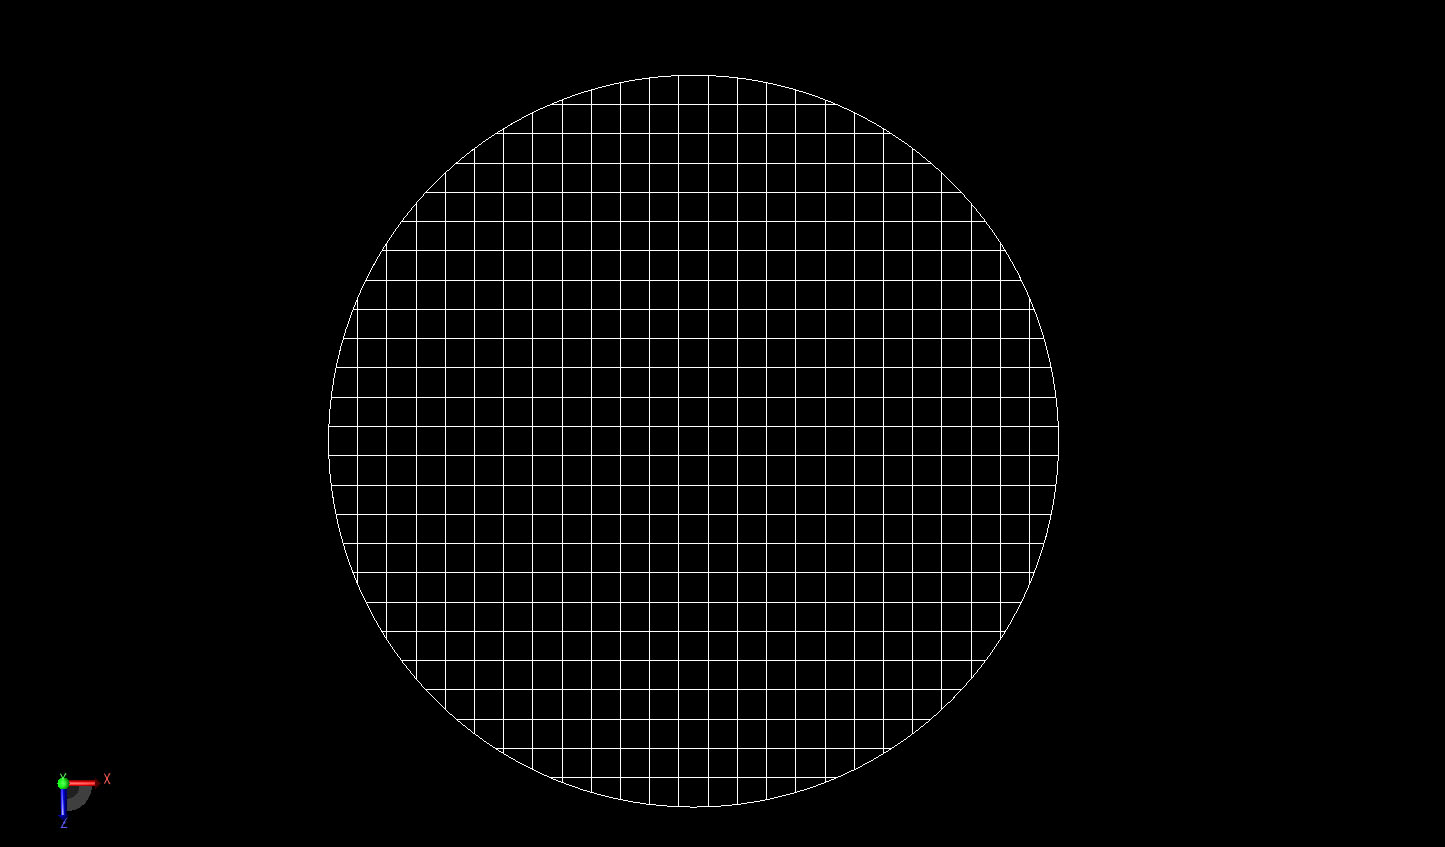 図2Aは、円柱の曲面におけるXACTメッシュを示す、円柱の2mm解像度のFDTDメッシュの断面図である。